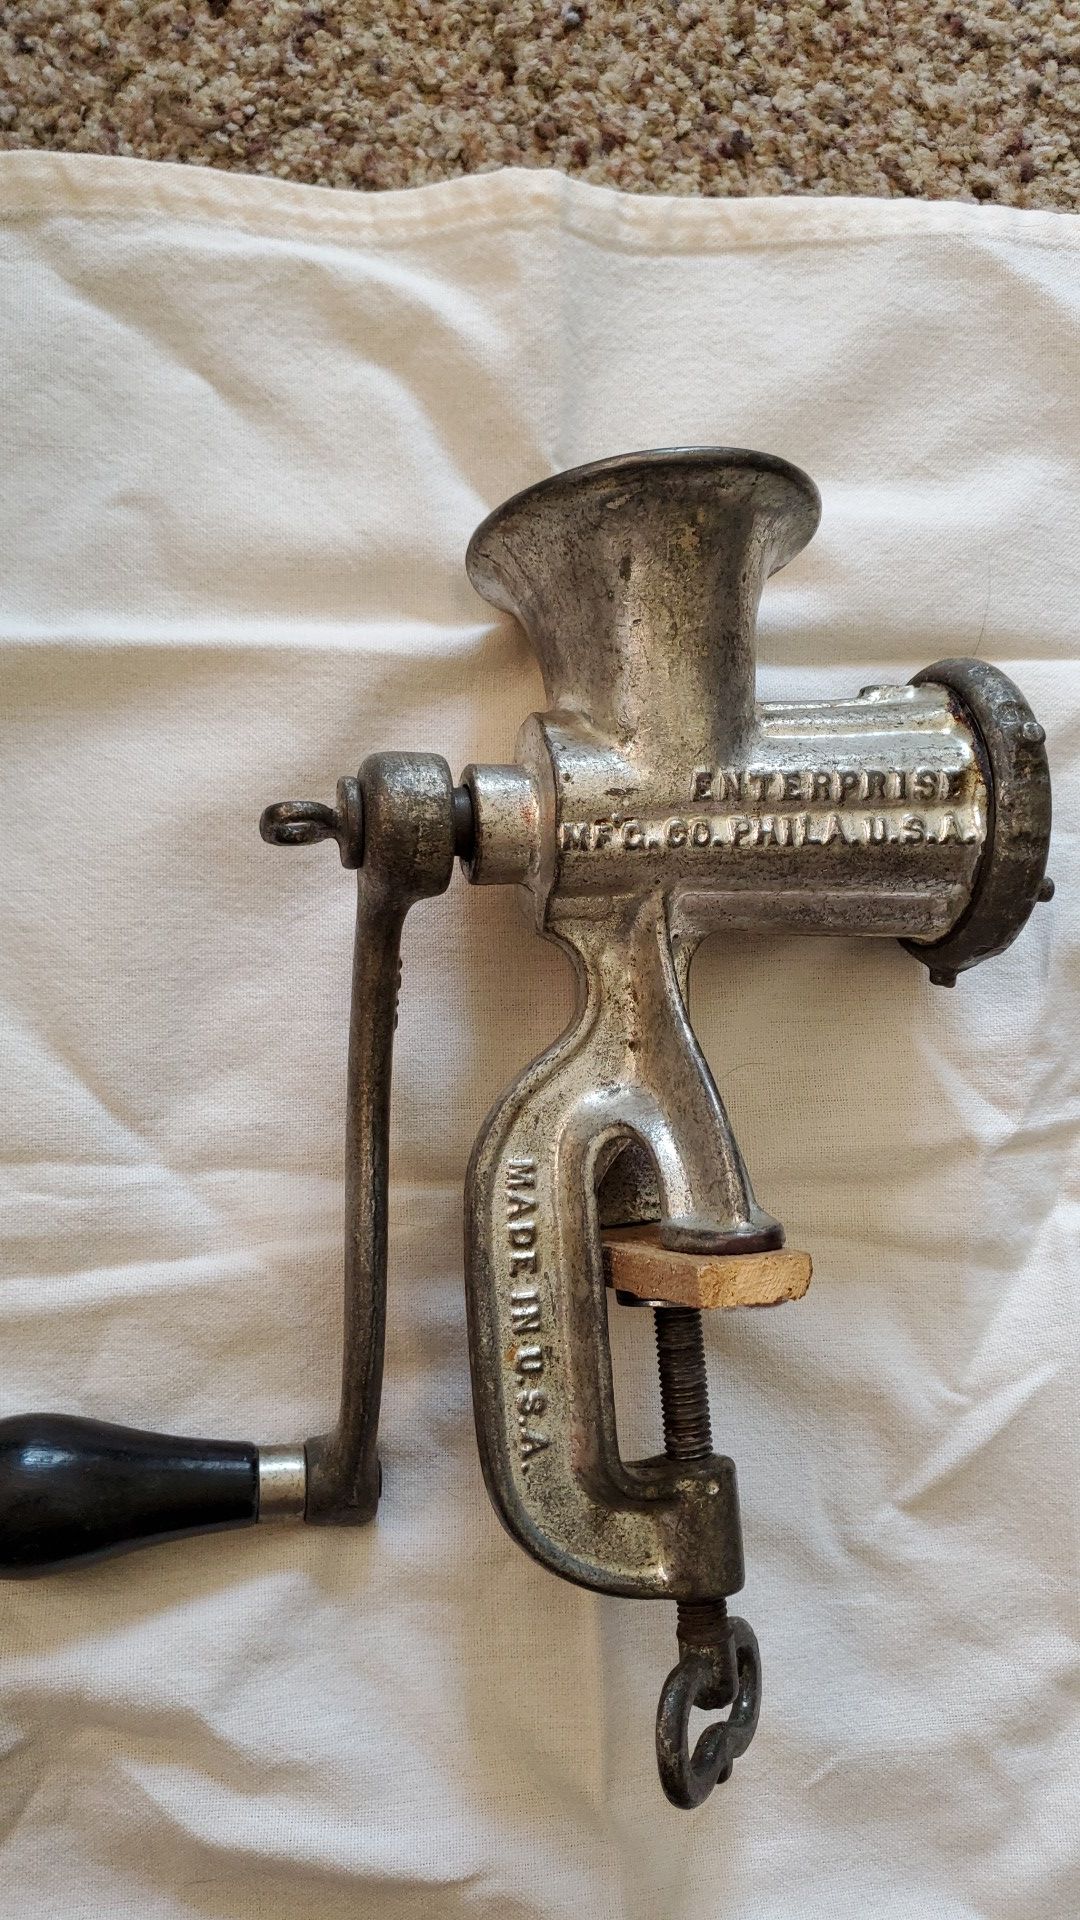 Vintage No 5 meat grinder by Enterprise